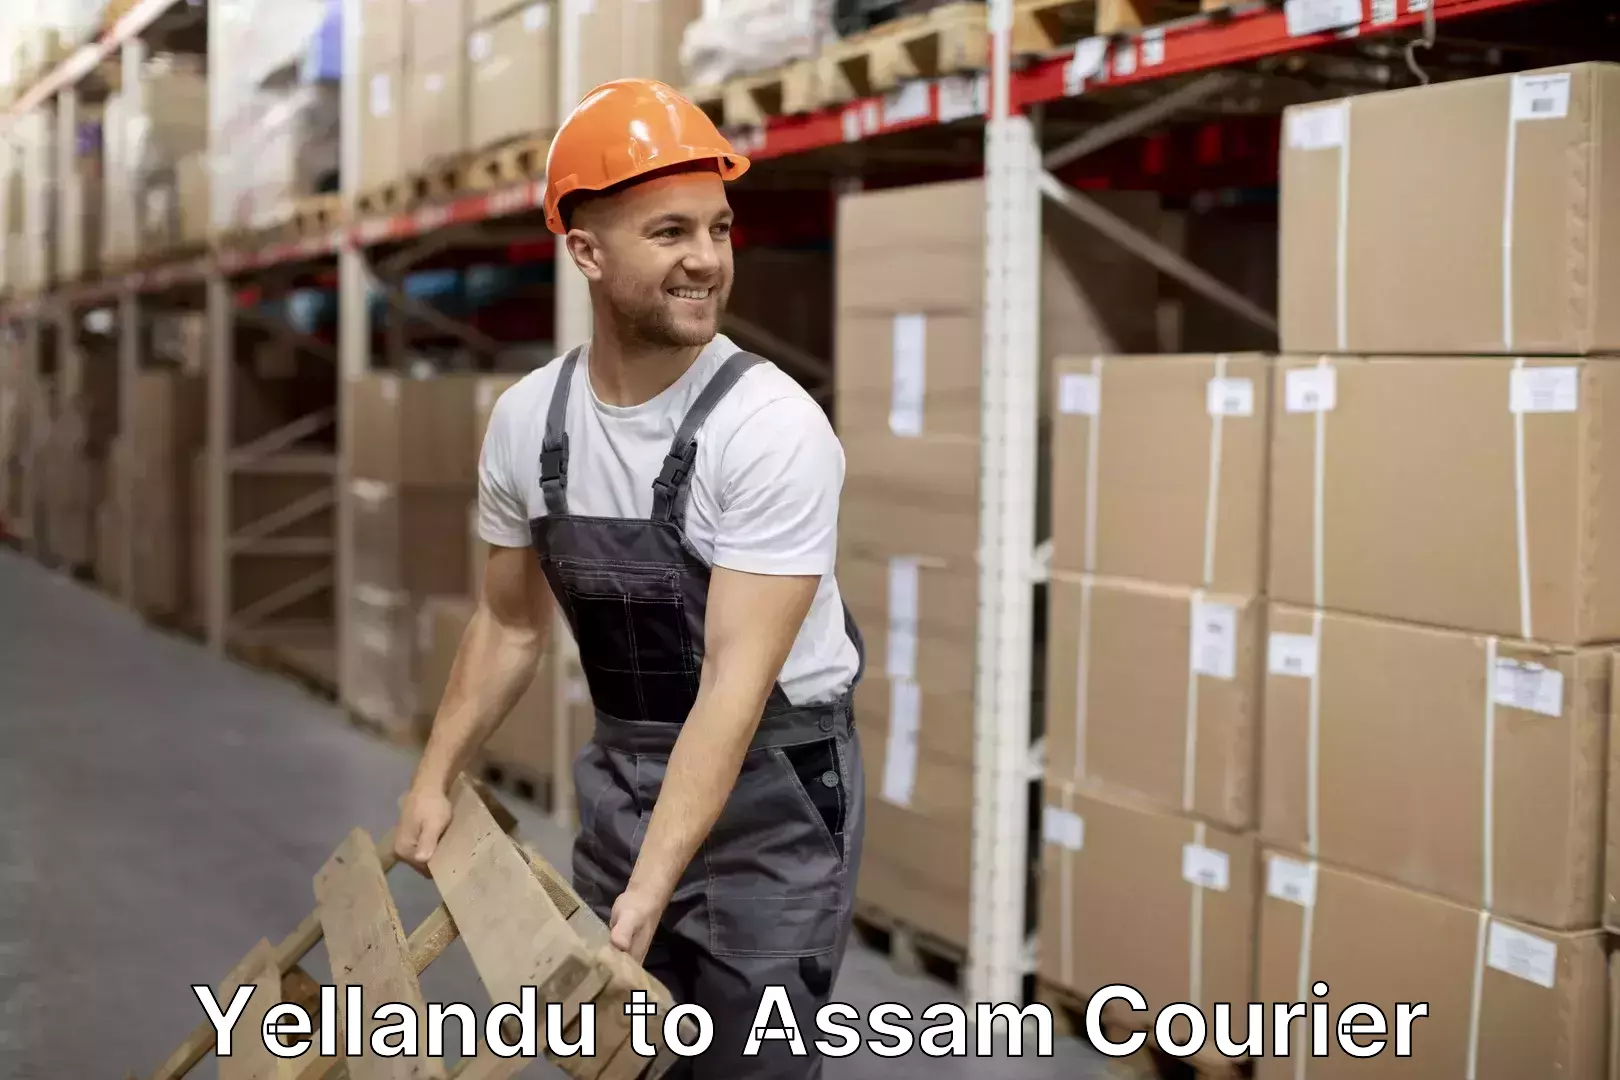 Furniture delivery service Yellandu to Assam